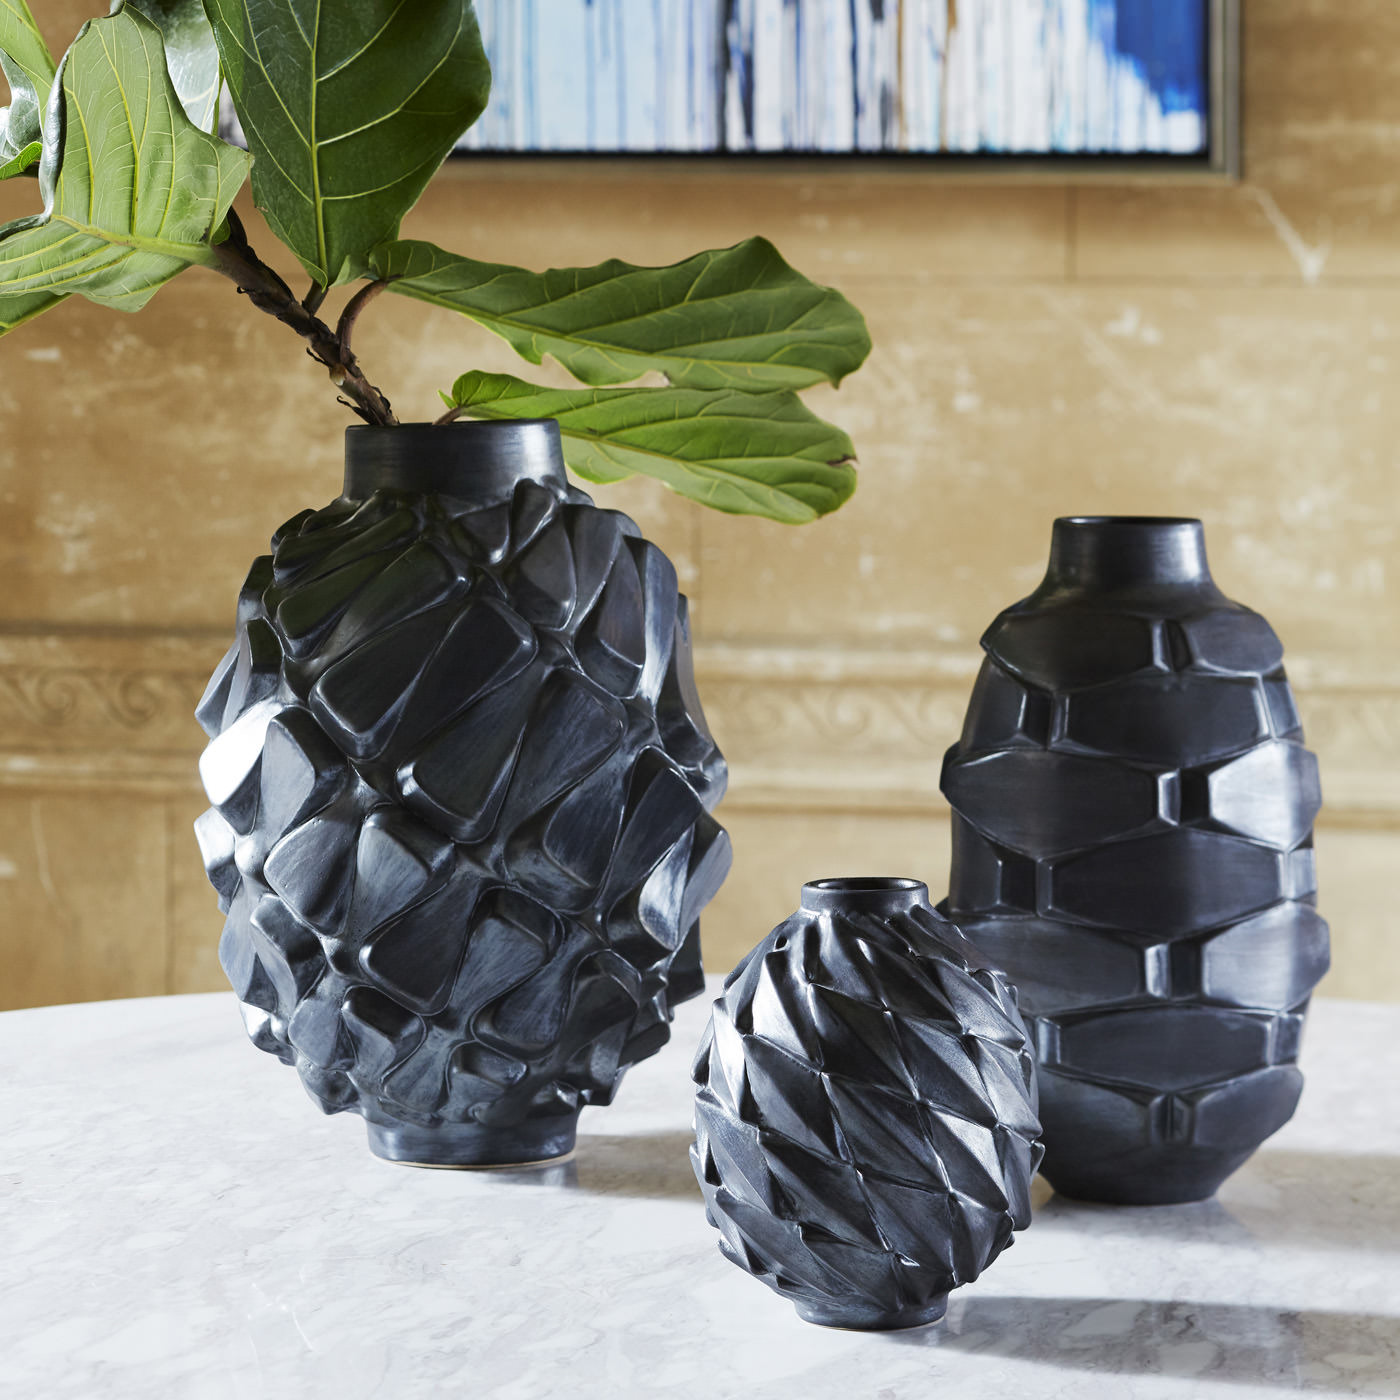 jonathan adler grenade vase – innovative ceramic art pieces